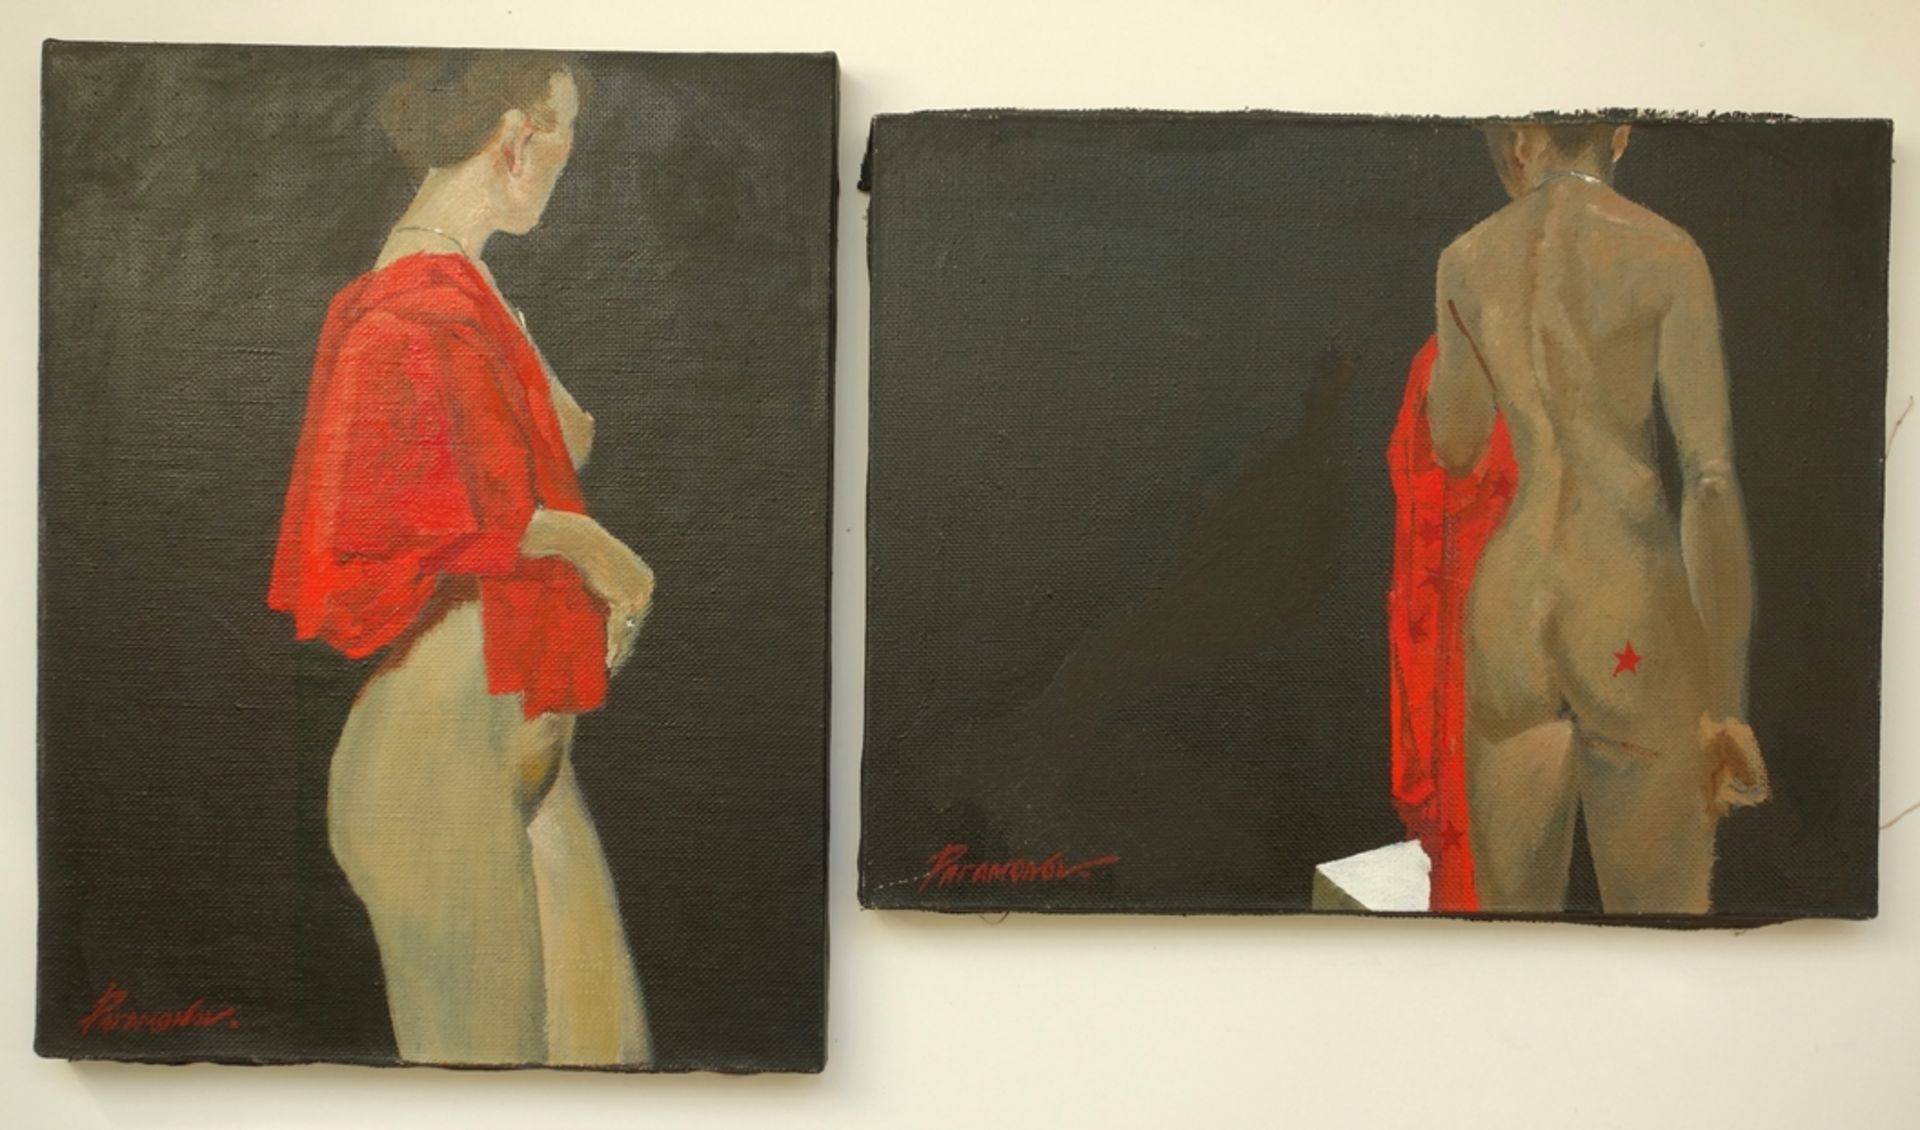 Gemäldepaar "Akt" von Vassili Paramonov (1923-2006), 1990, Öl/Lwd., jeweils unten links signiert,